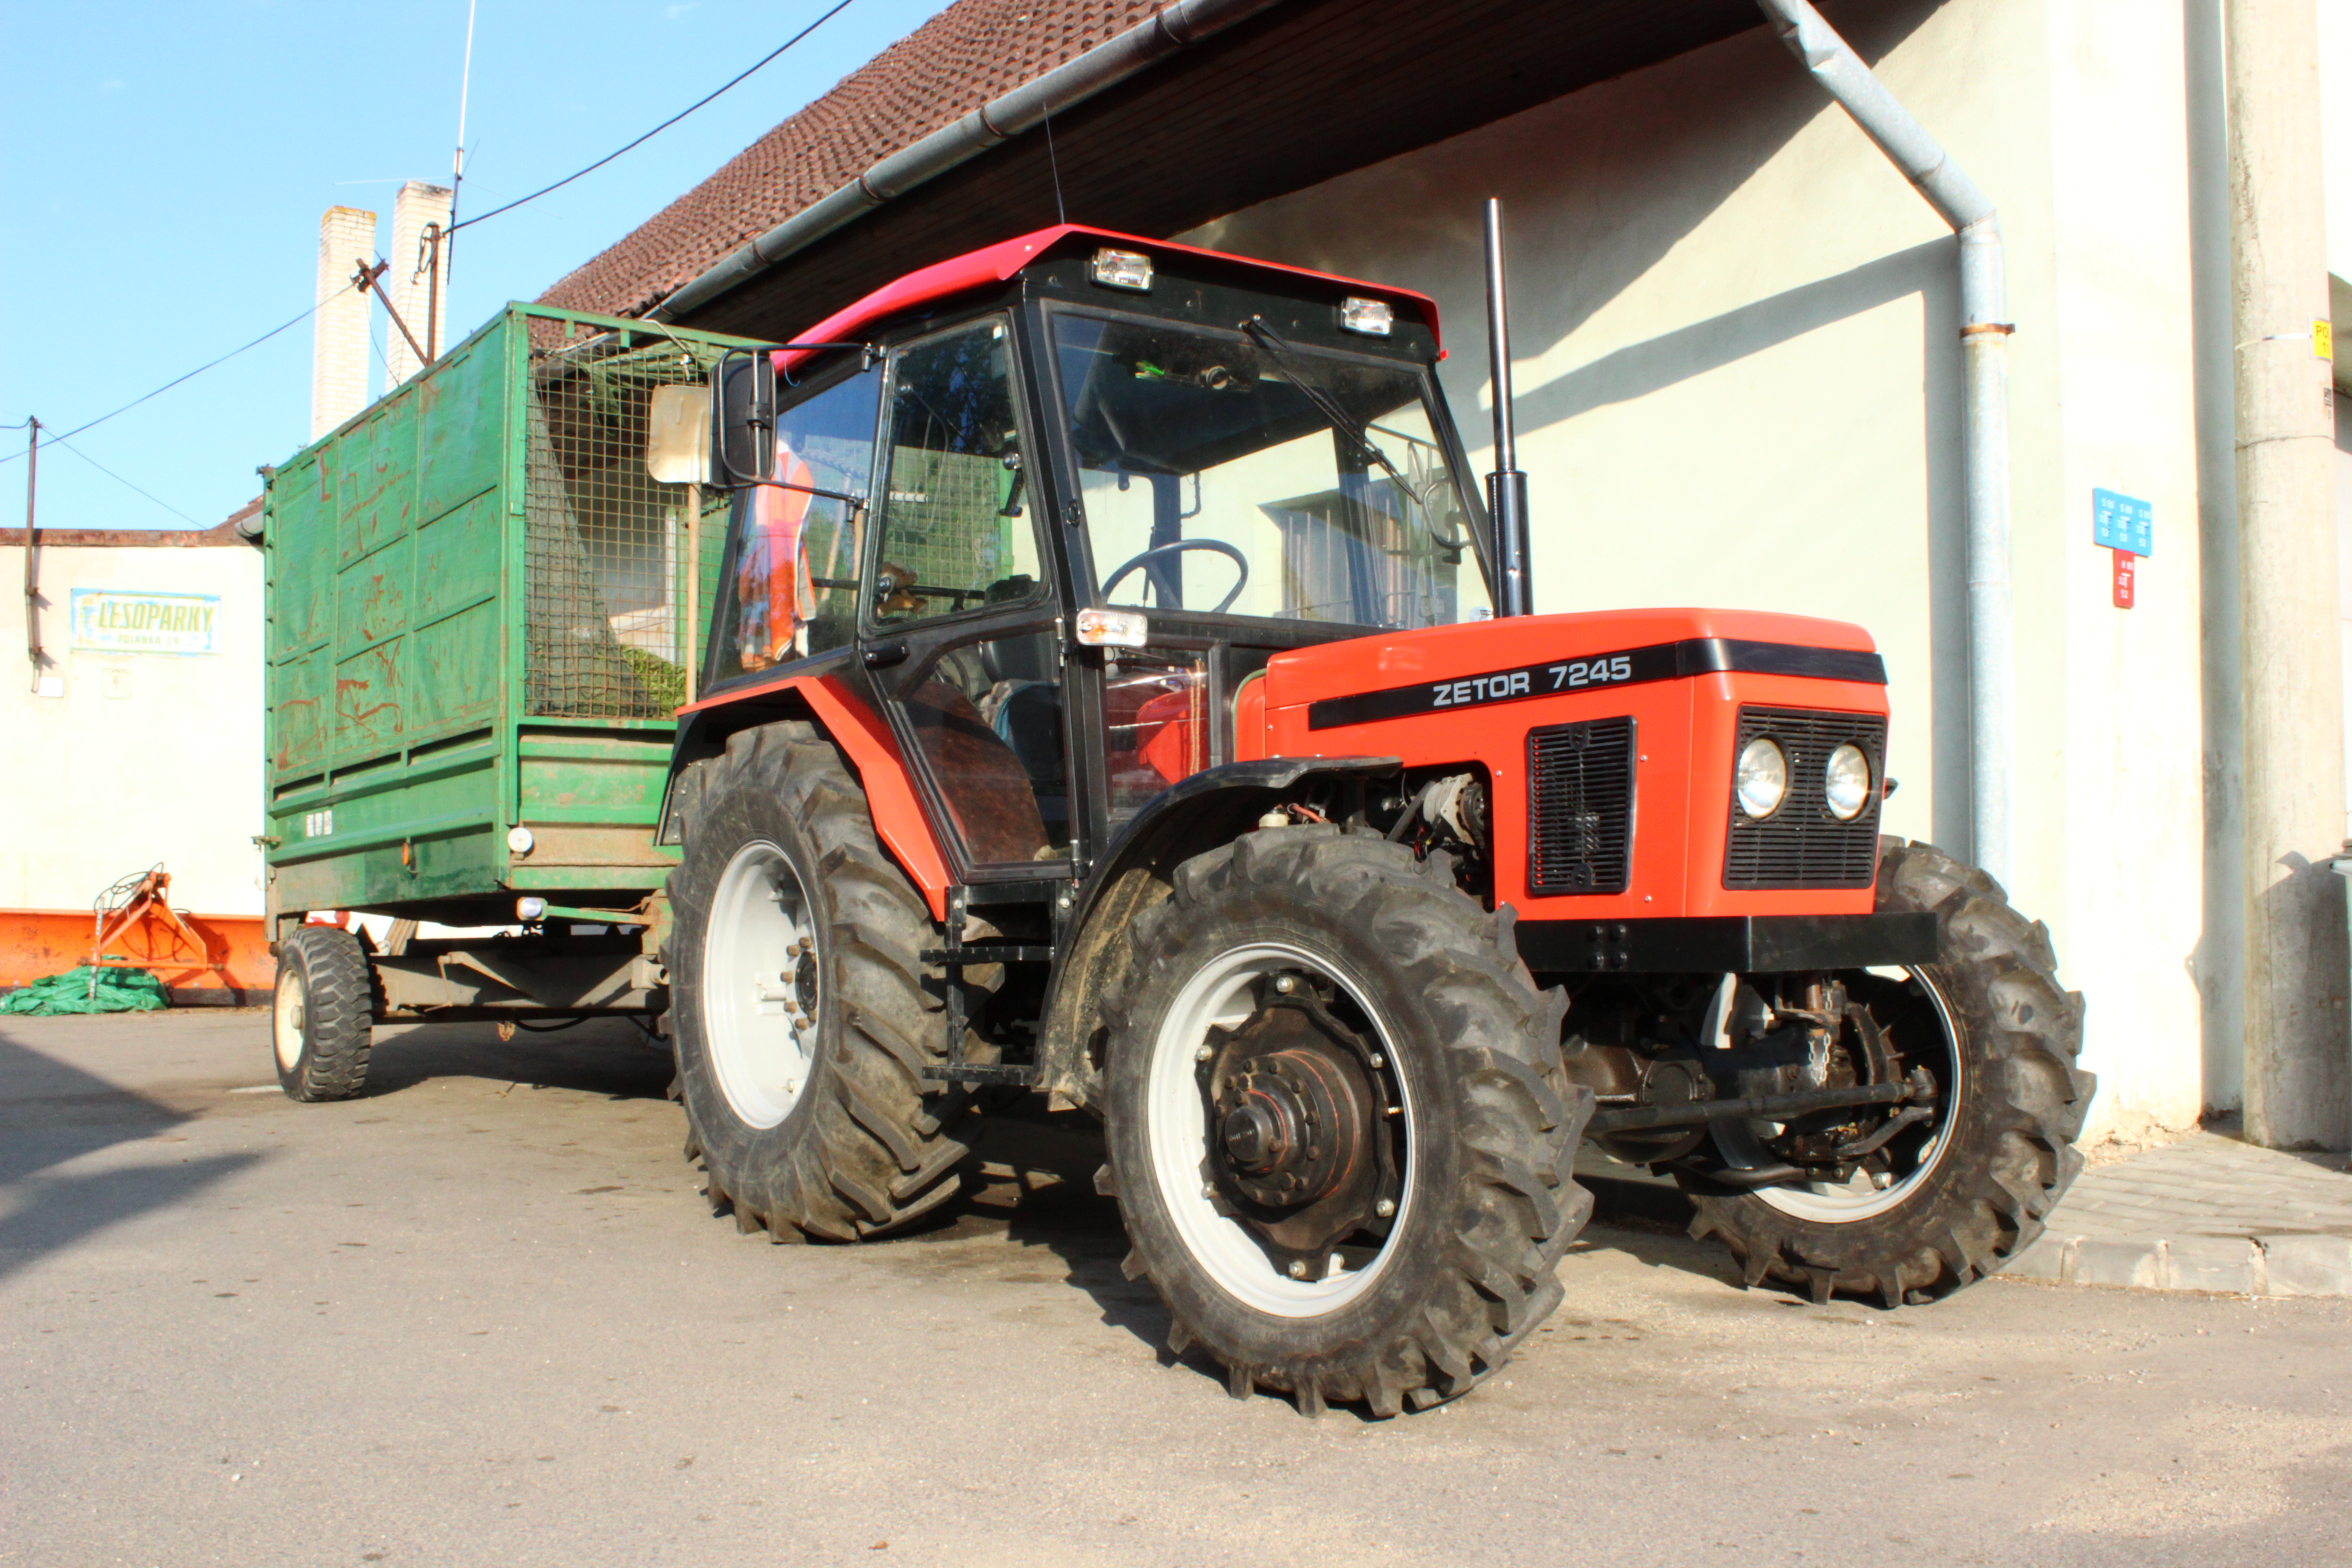 Zetor 7245 tractor in Třebíč.jpg